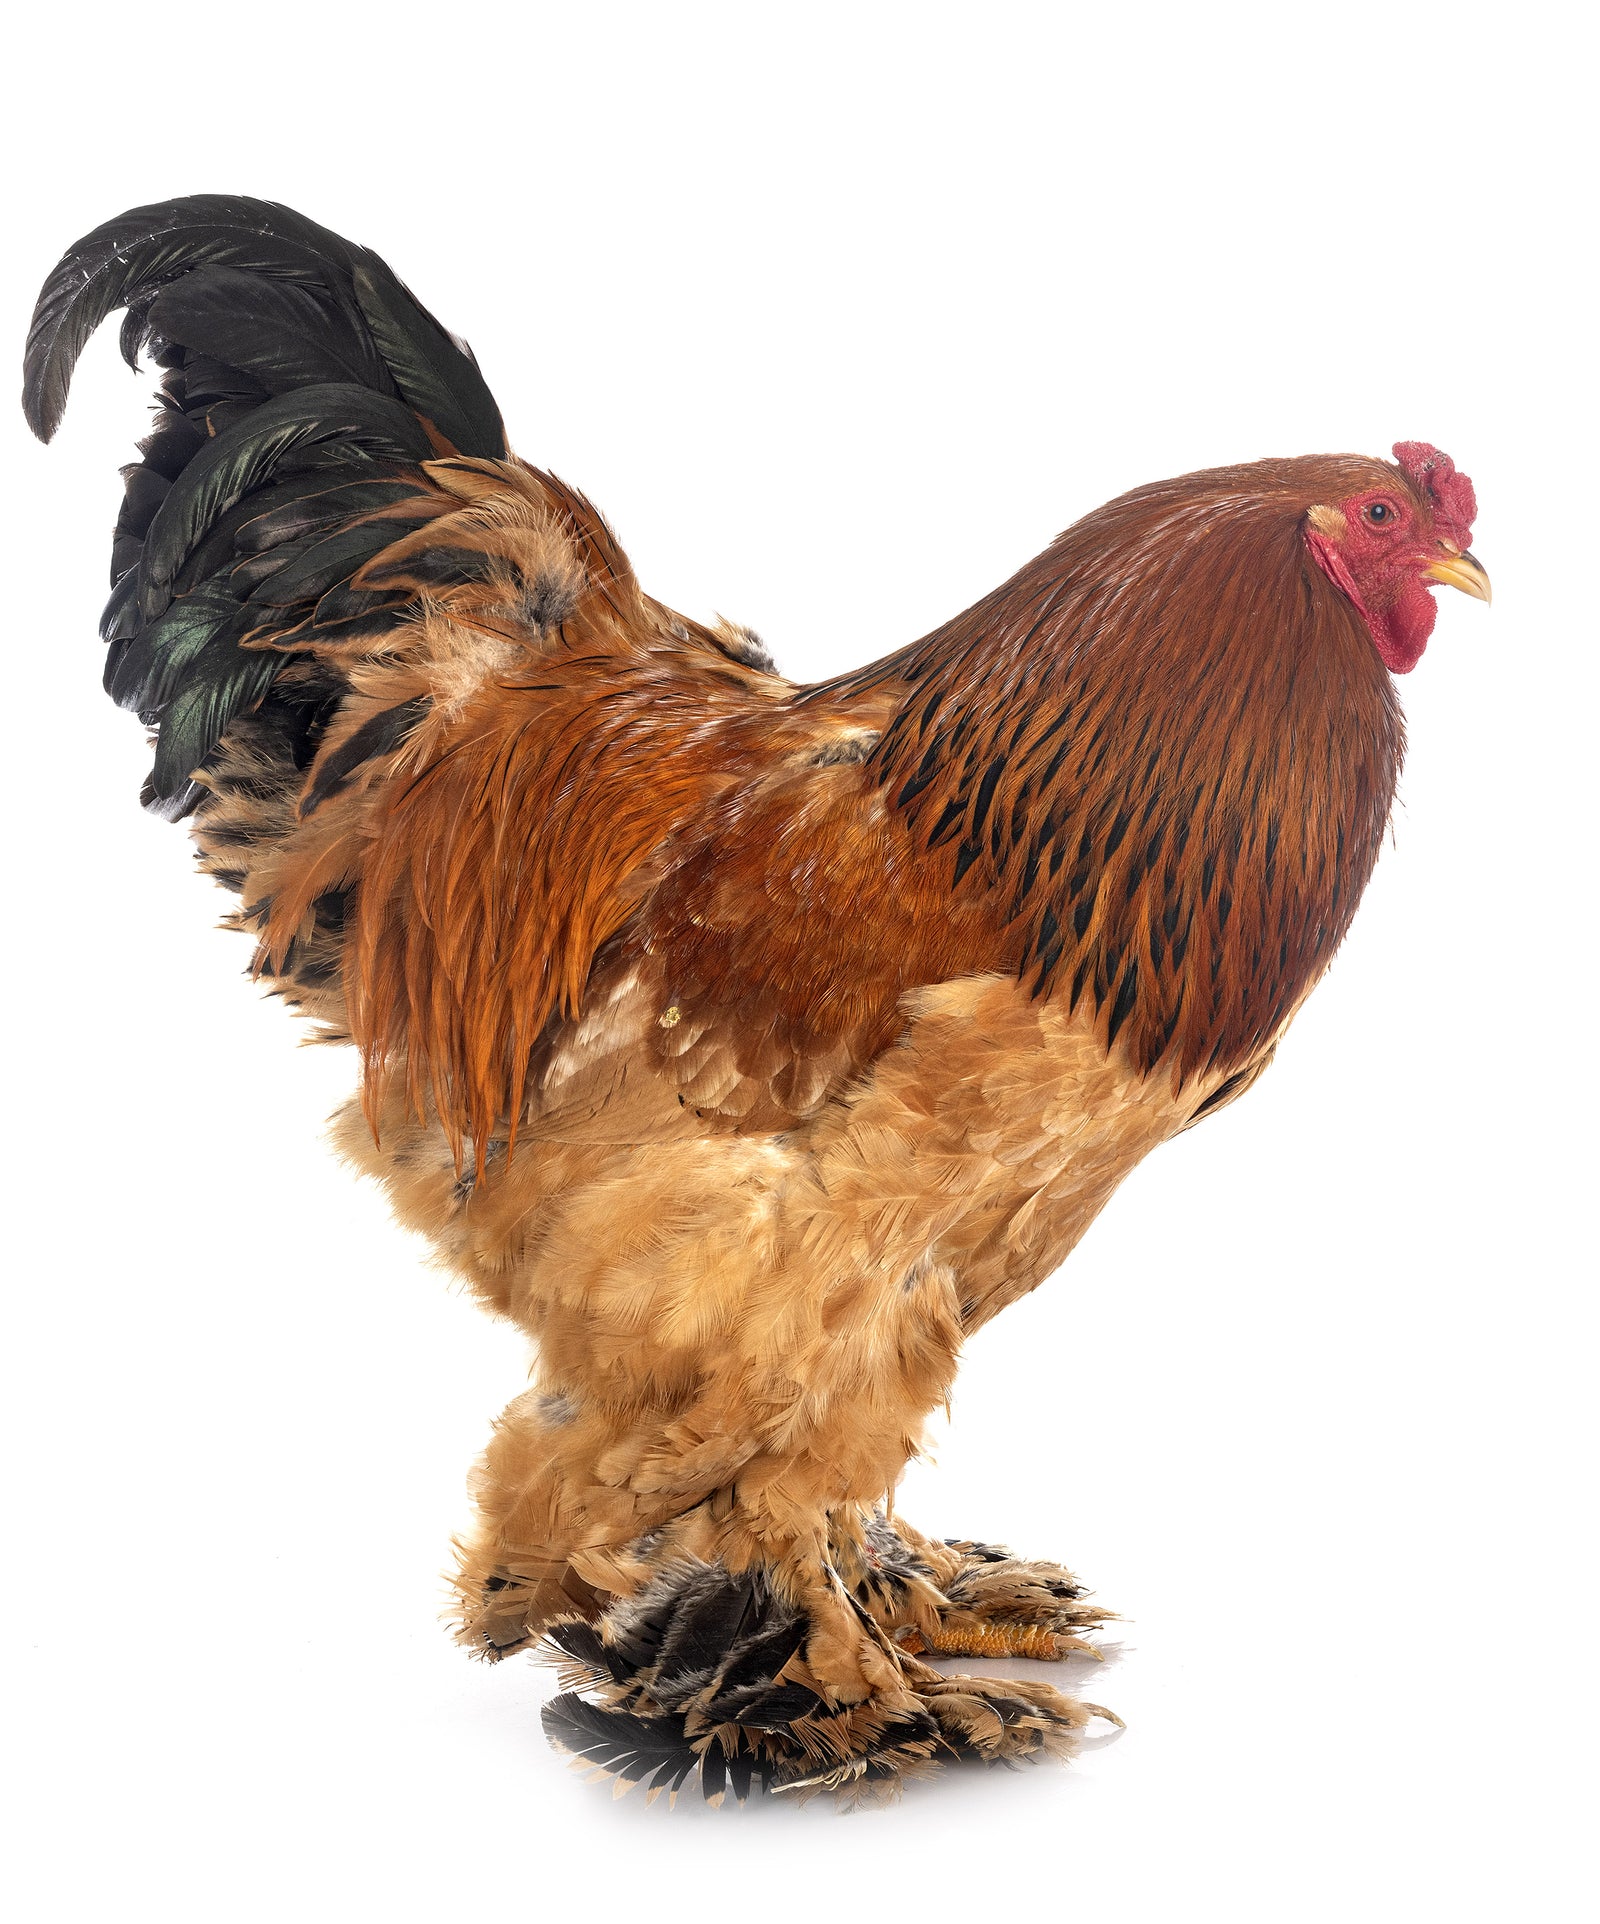 Buff Brahma  Glendevon Poultry